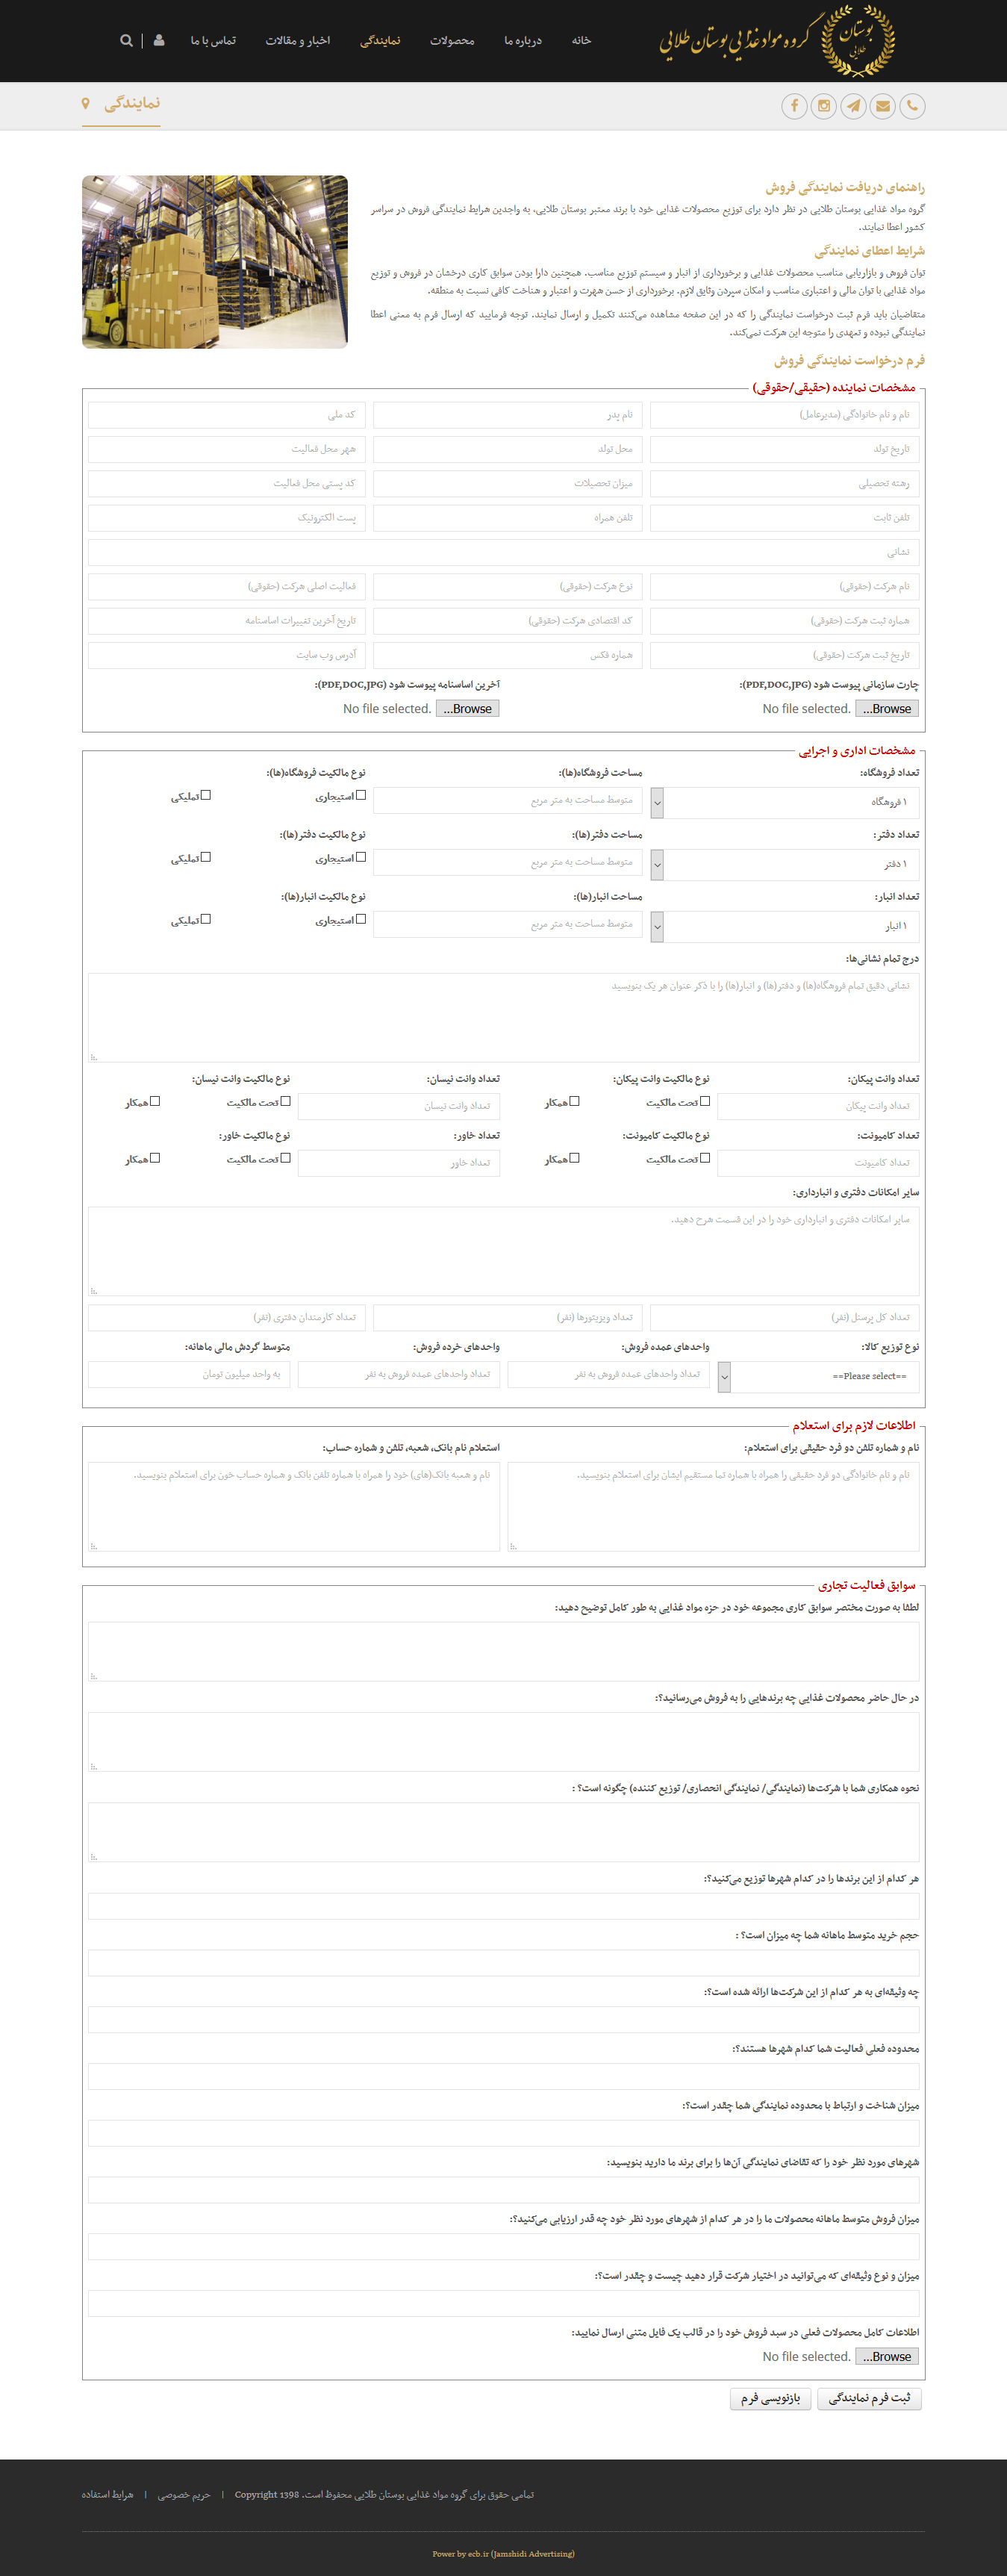 تصویری از صفحه ثبت درخواست نمایندگی فروش گروه مواد غذایی بوستان طلایی